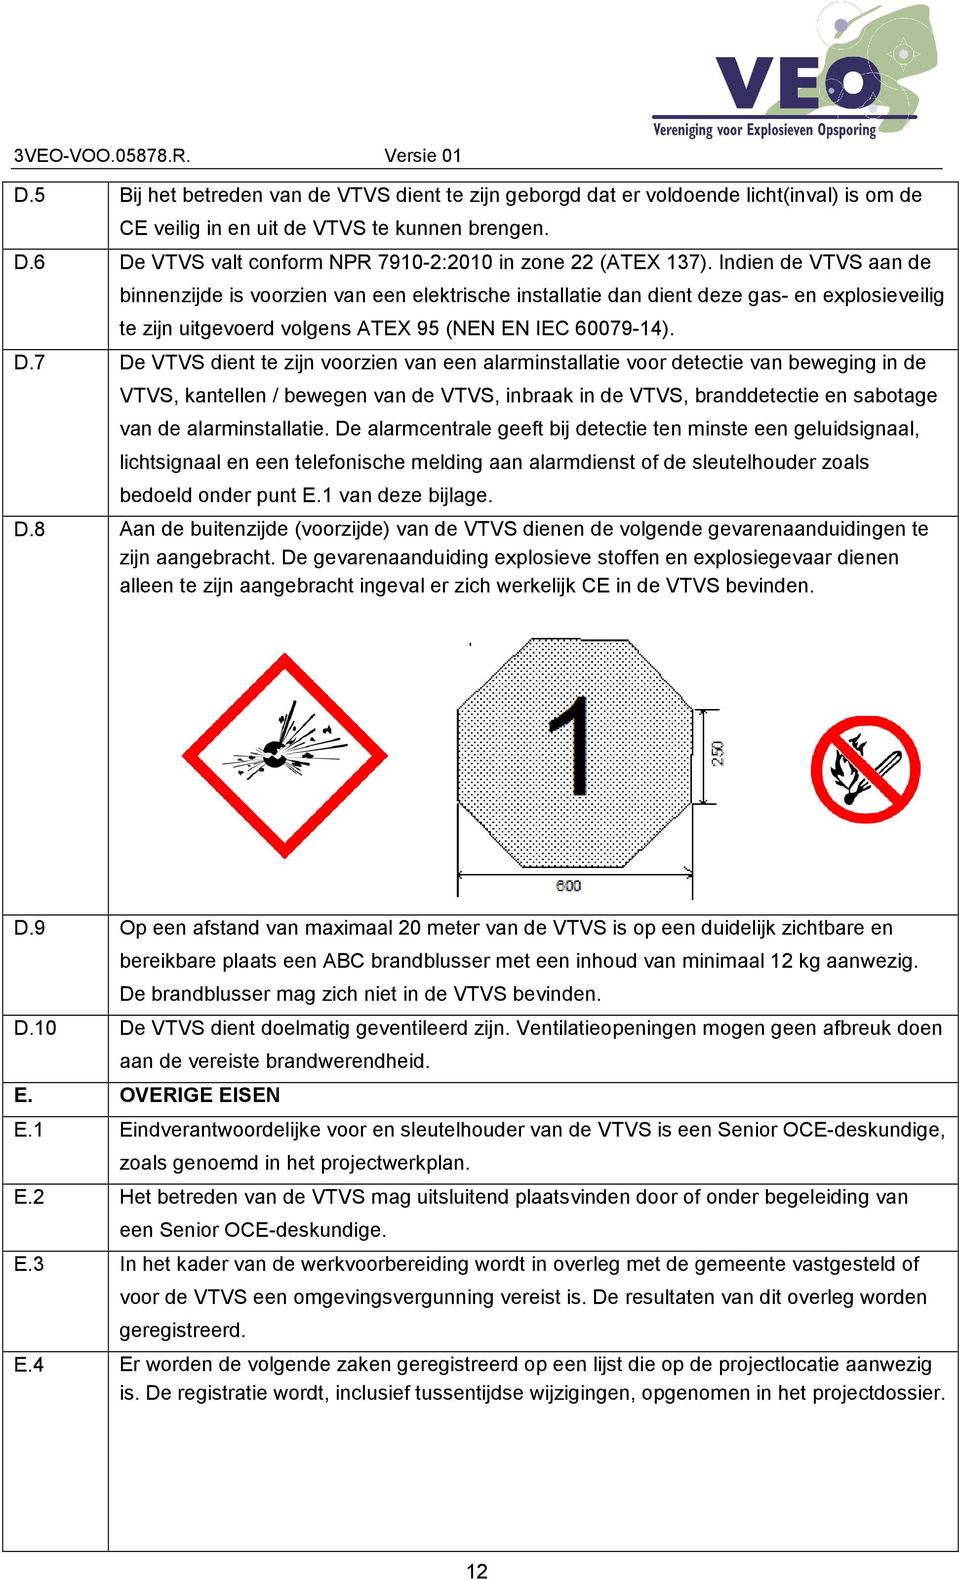 Indien de VTVS aan de binnenzijde is voorzien van een elektrische installatie dan dient deze gas- en explosieveilig te zijn uitgevoerd volgens ATEX 95 (NEN EN IEC 60079-14). D.